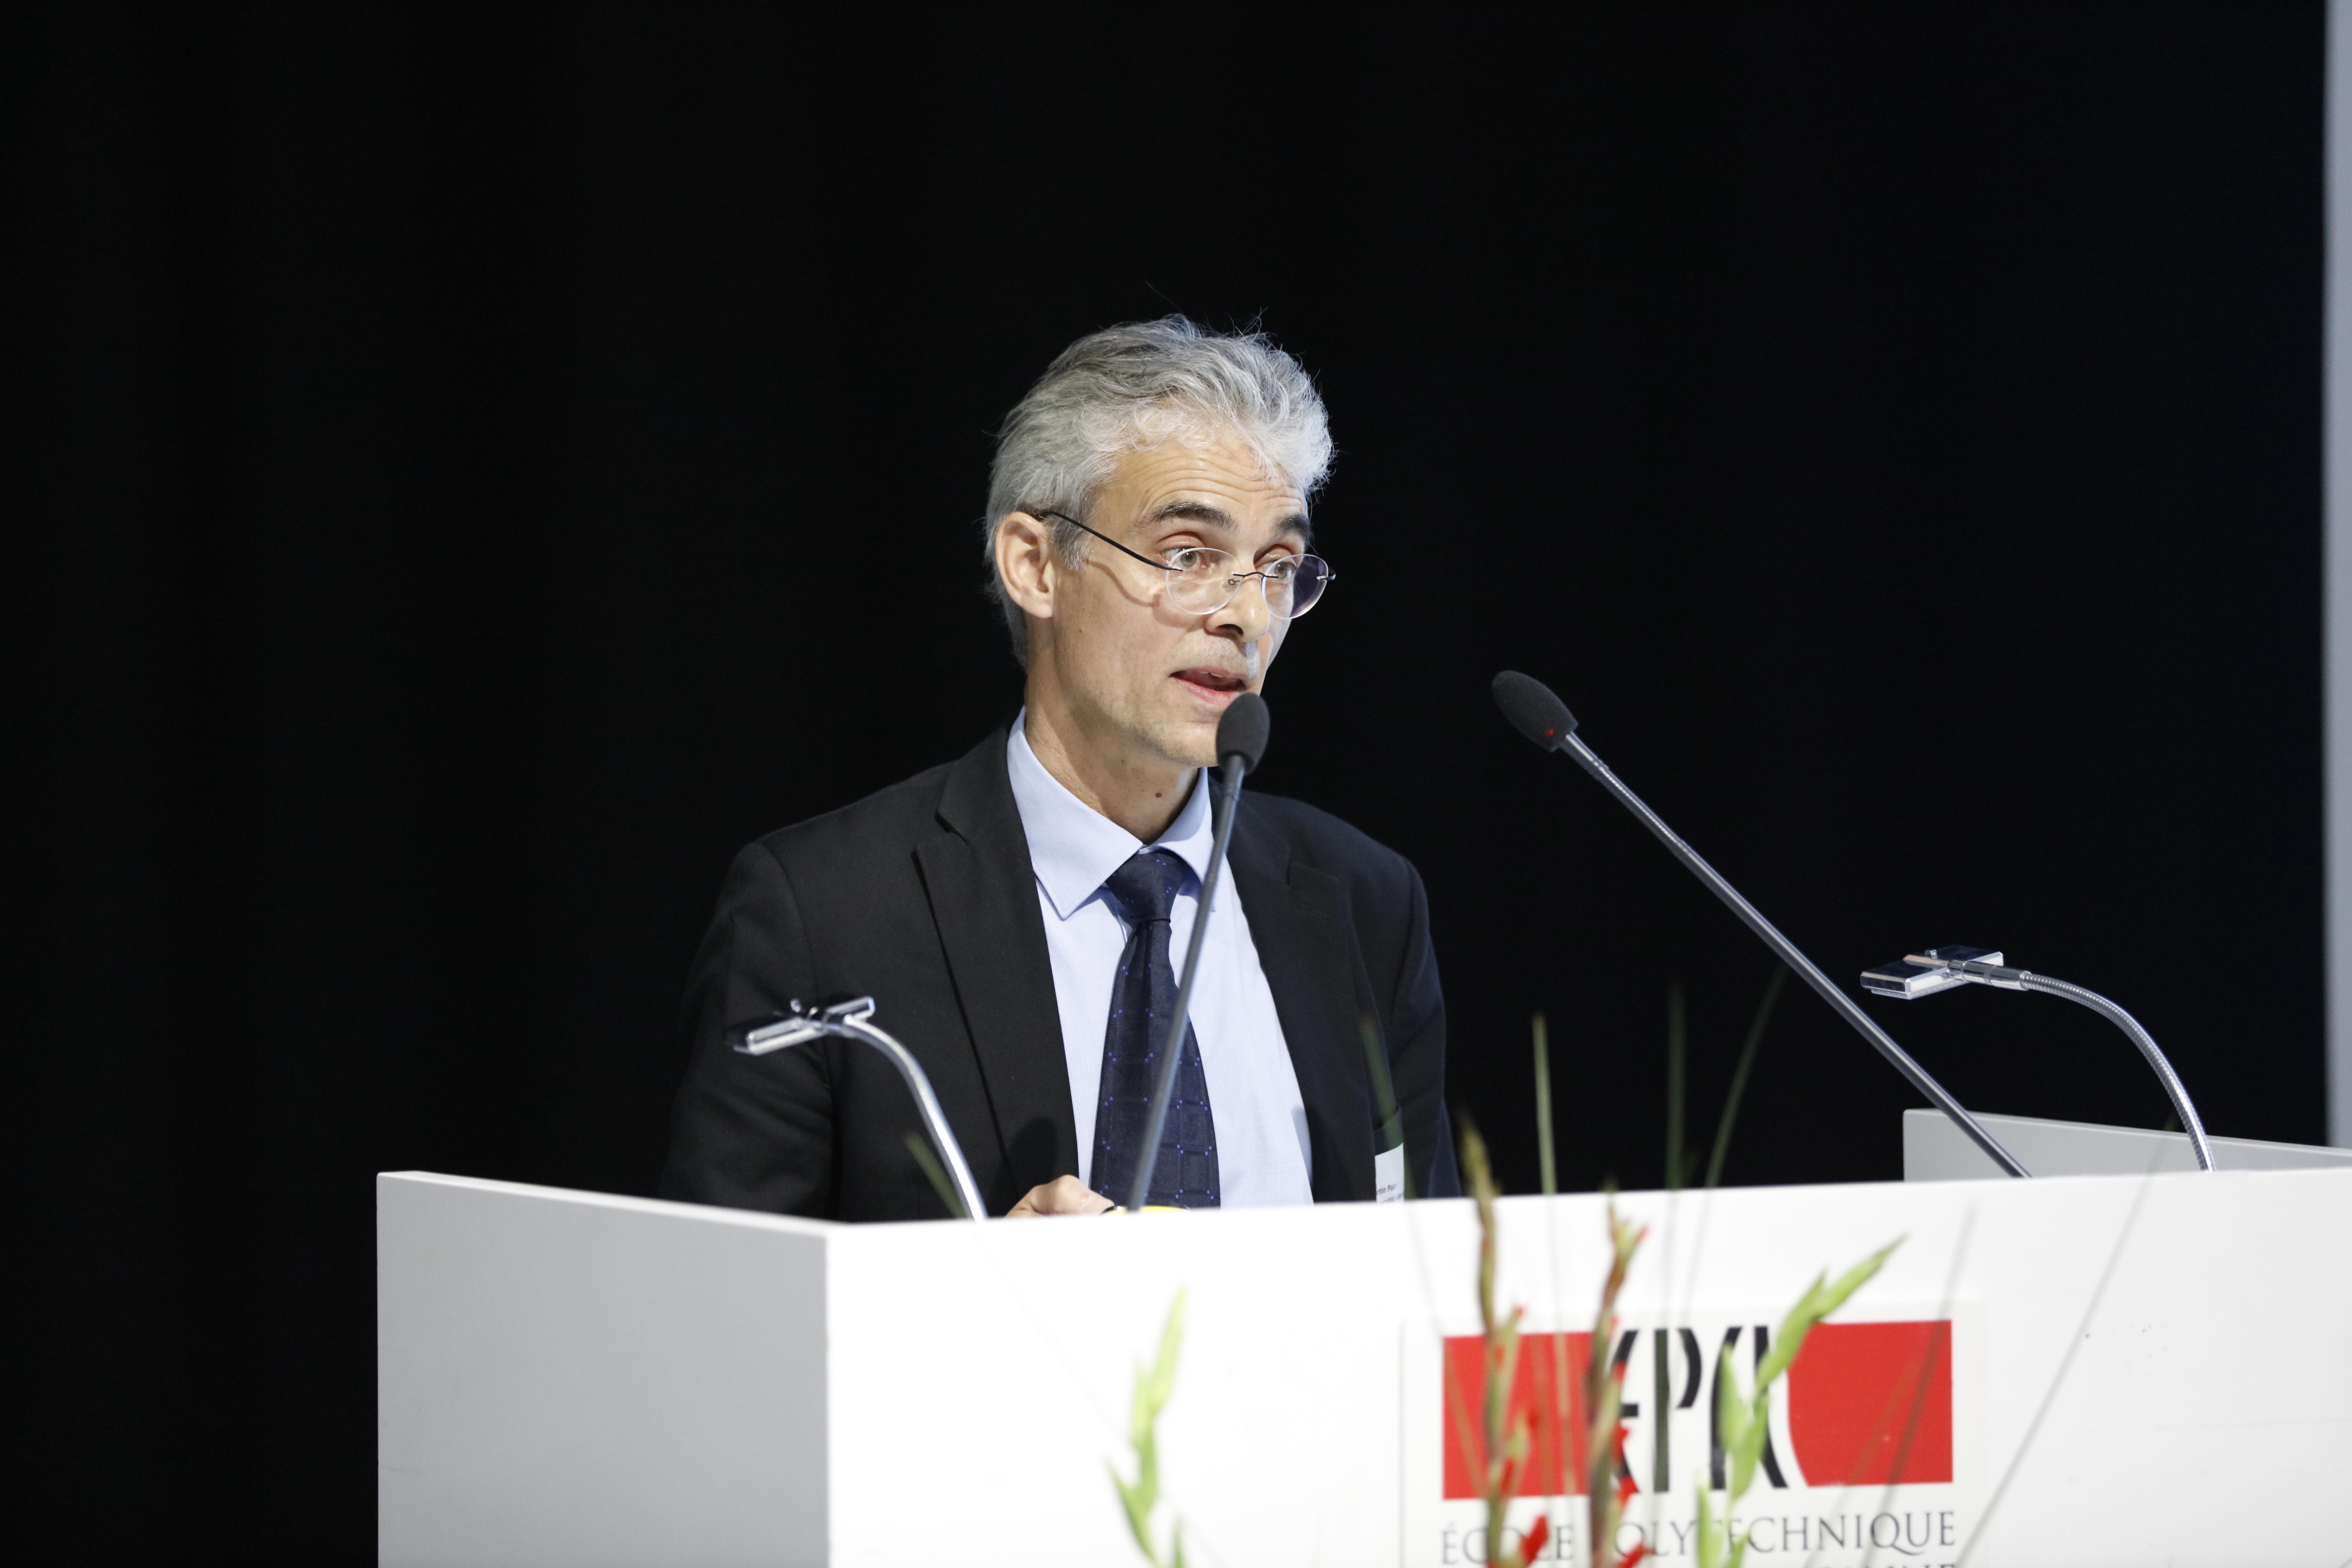 Bilan scientifique: Professeur Martin Patel, chaire en efficience énergétique, Université de Genève